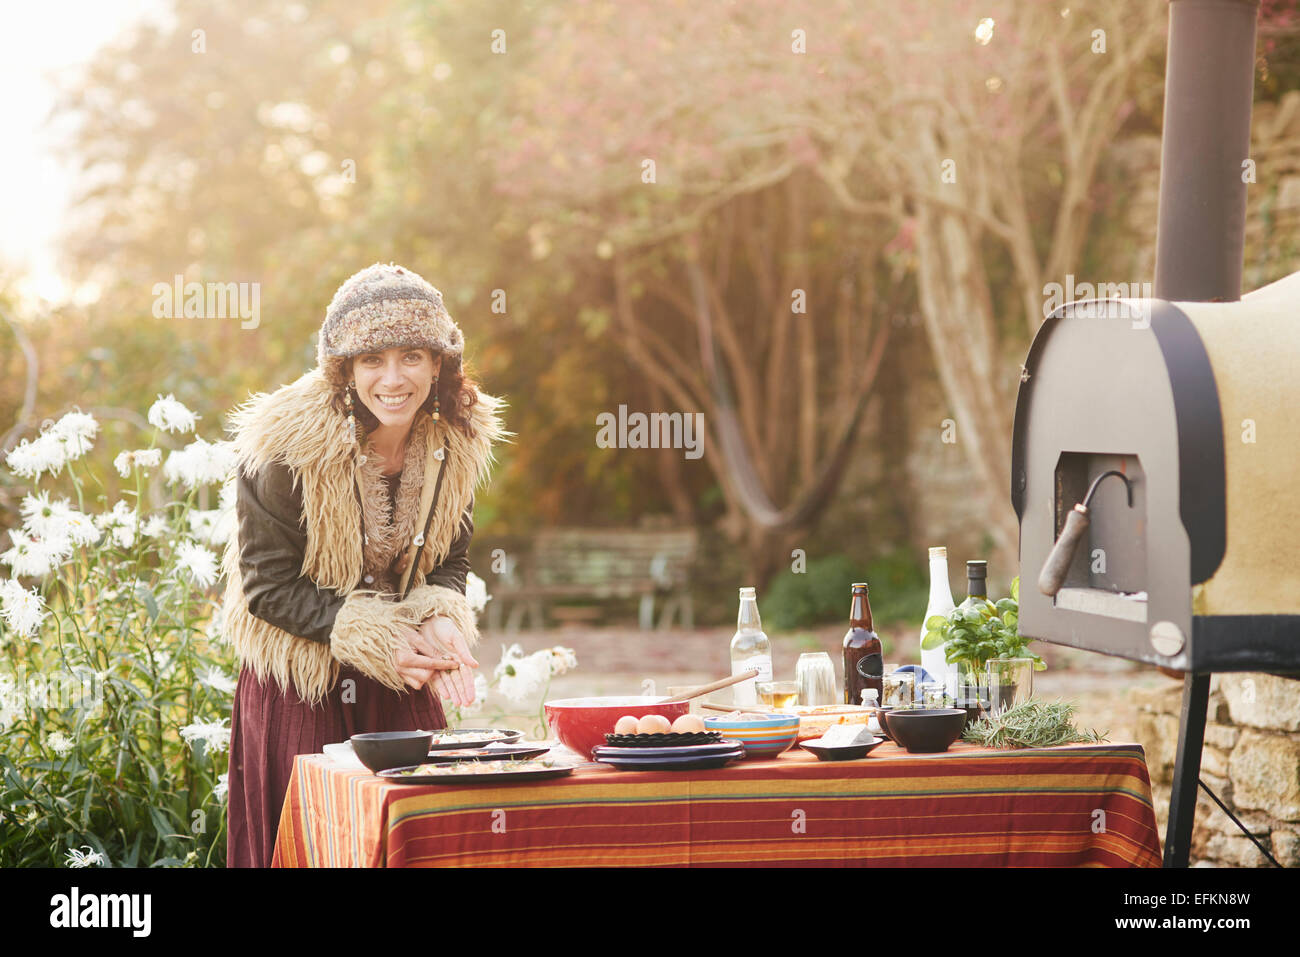 La préparation des aliments femme hippie mature sur table de jardin Banque D'Images